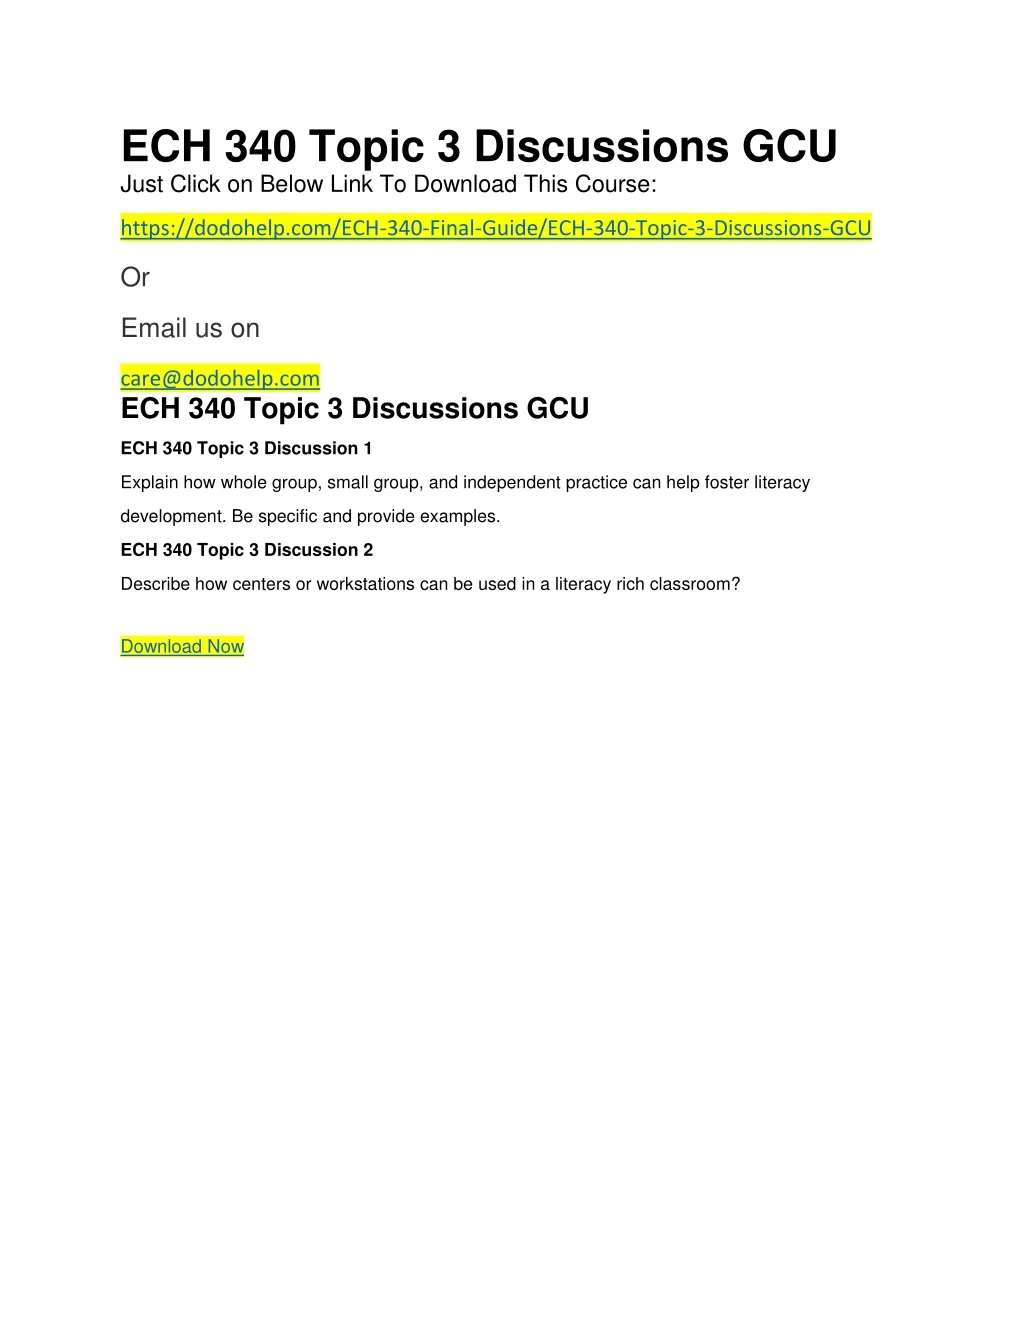 ech 340 topic 3 discussions gcu just click